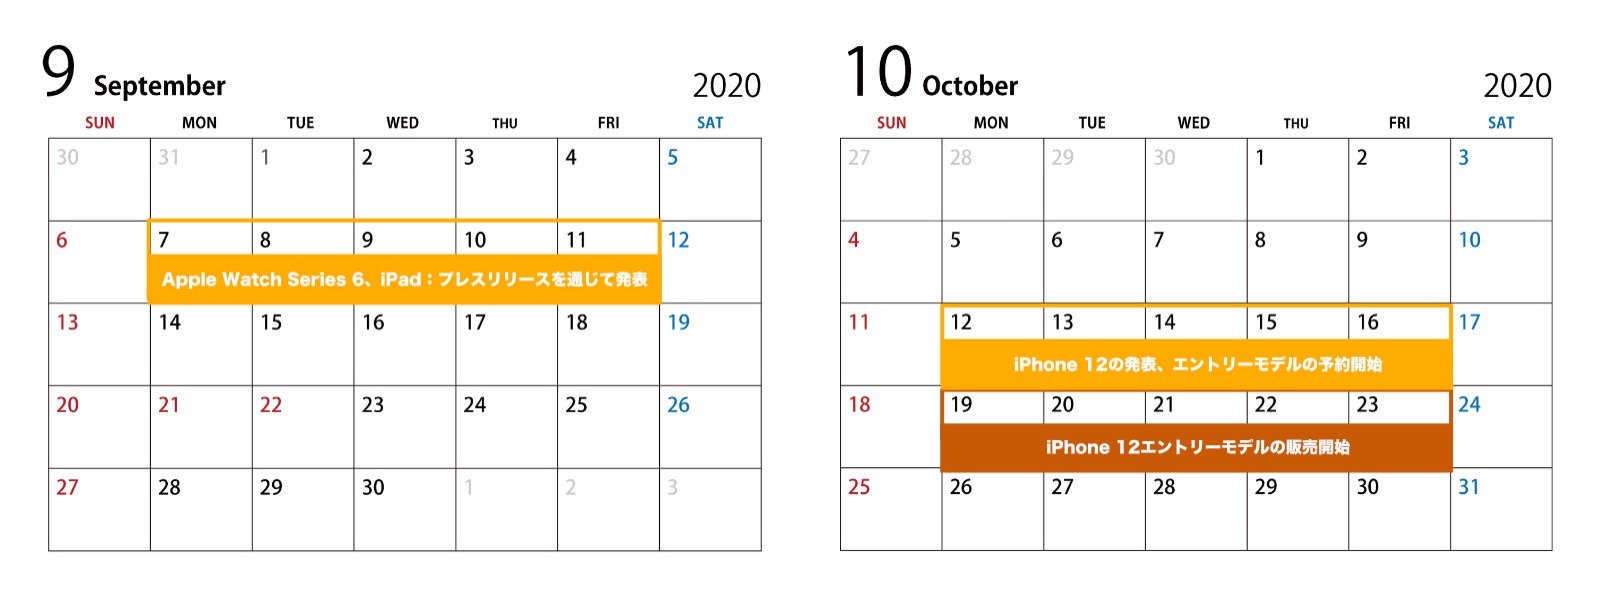 september-and-october-2020-Jon-Prosser.jpg